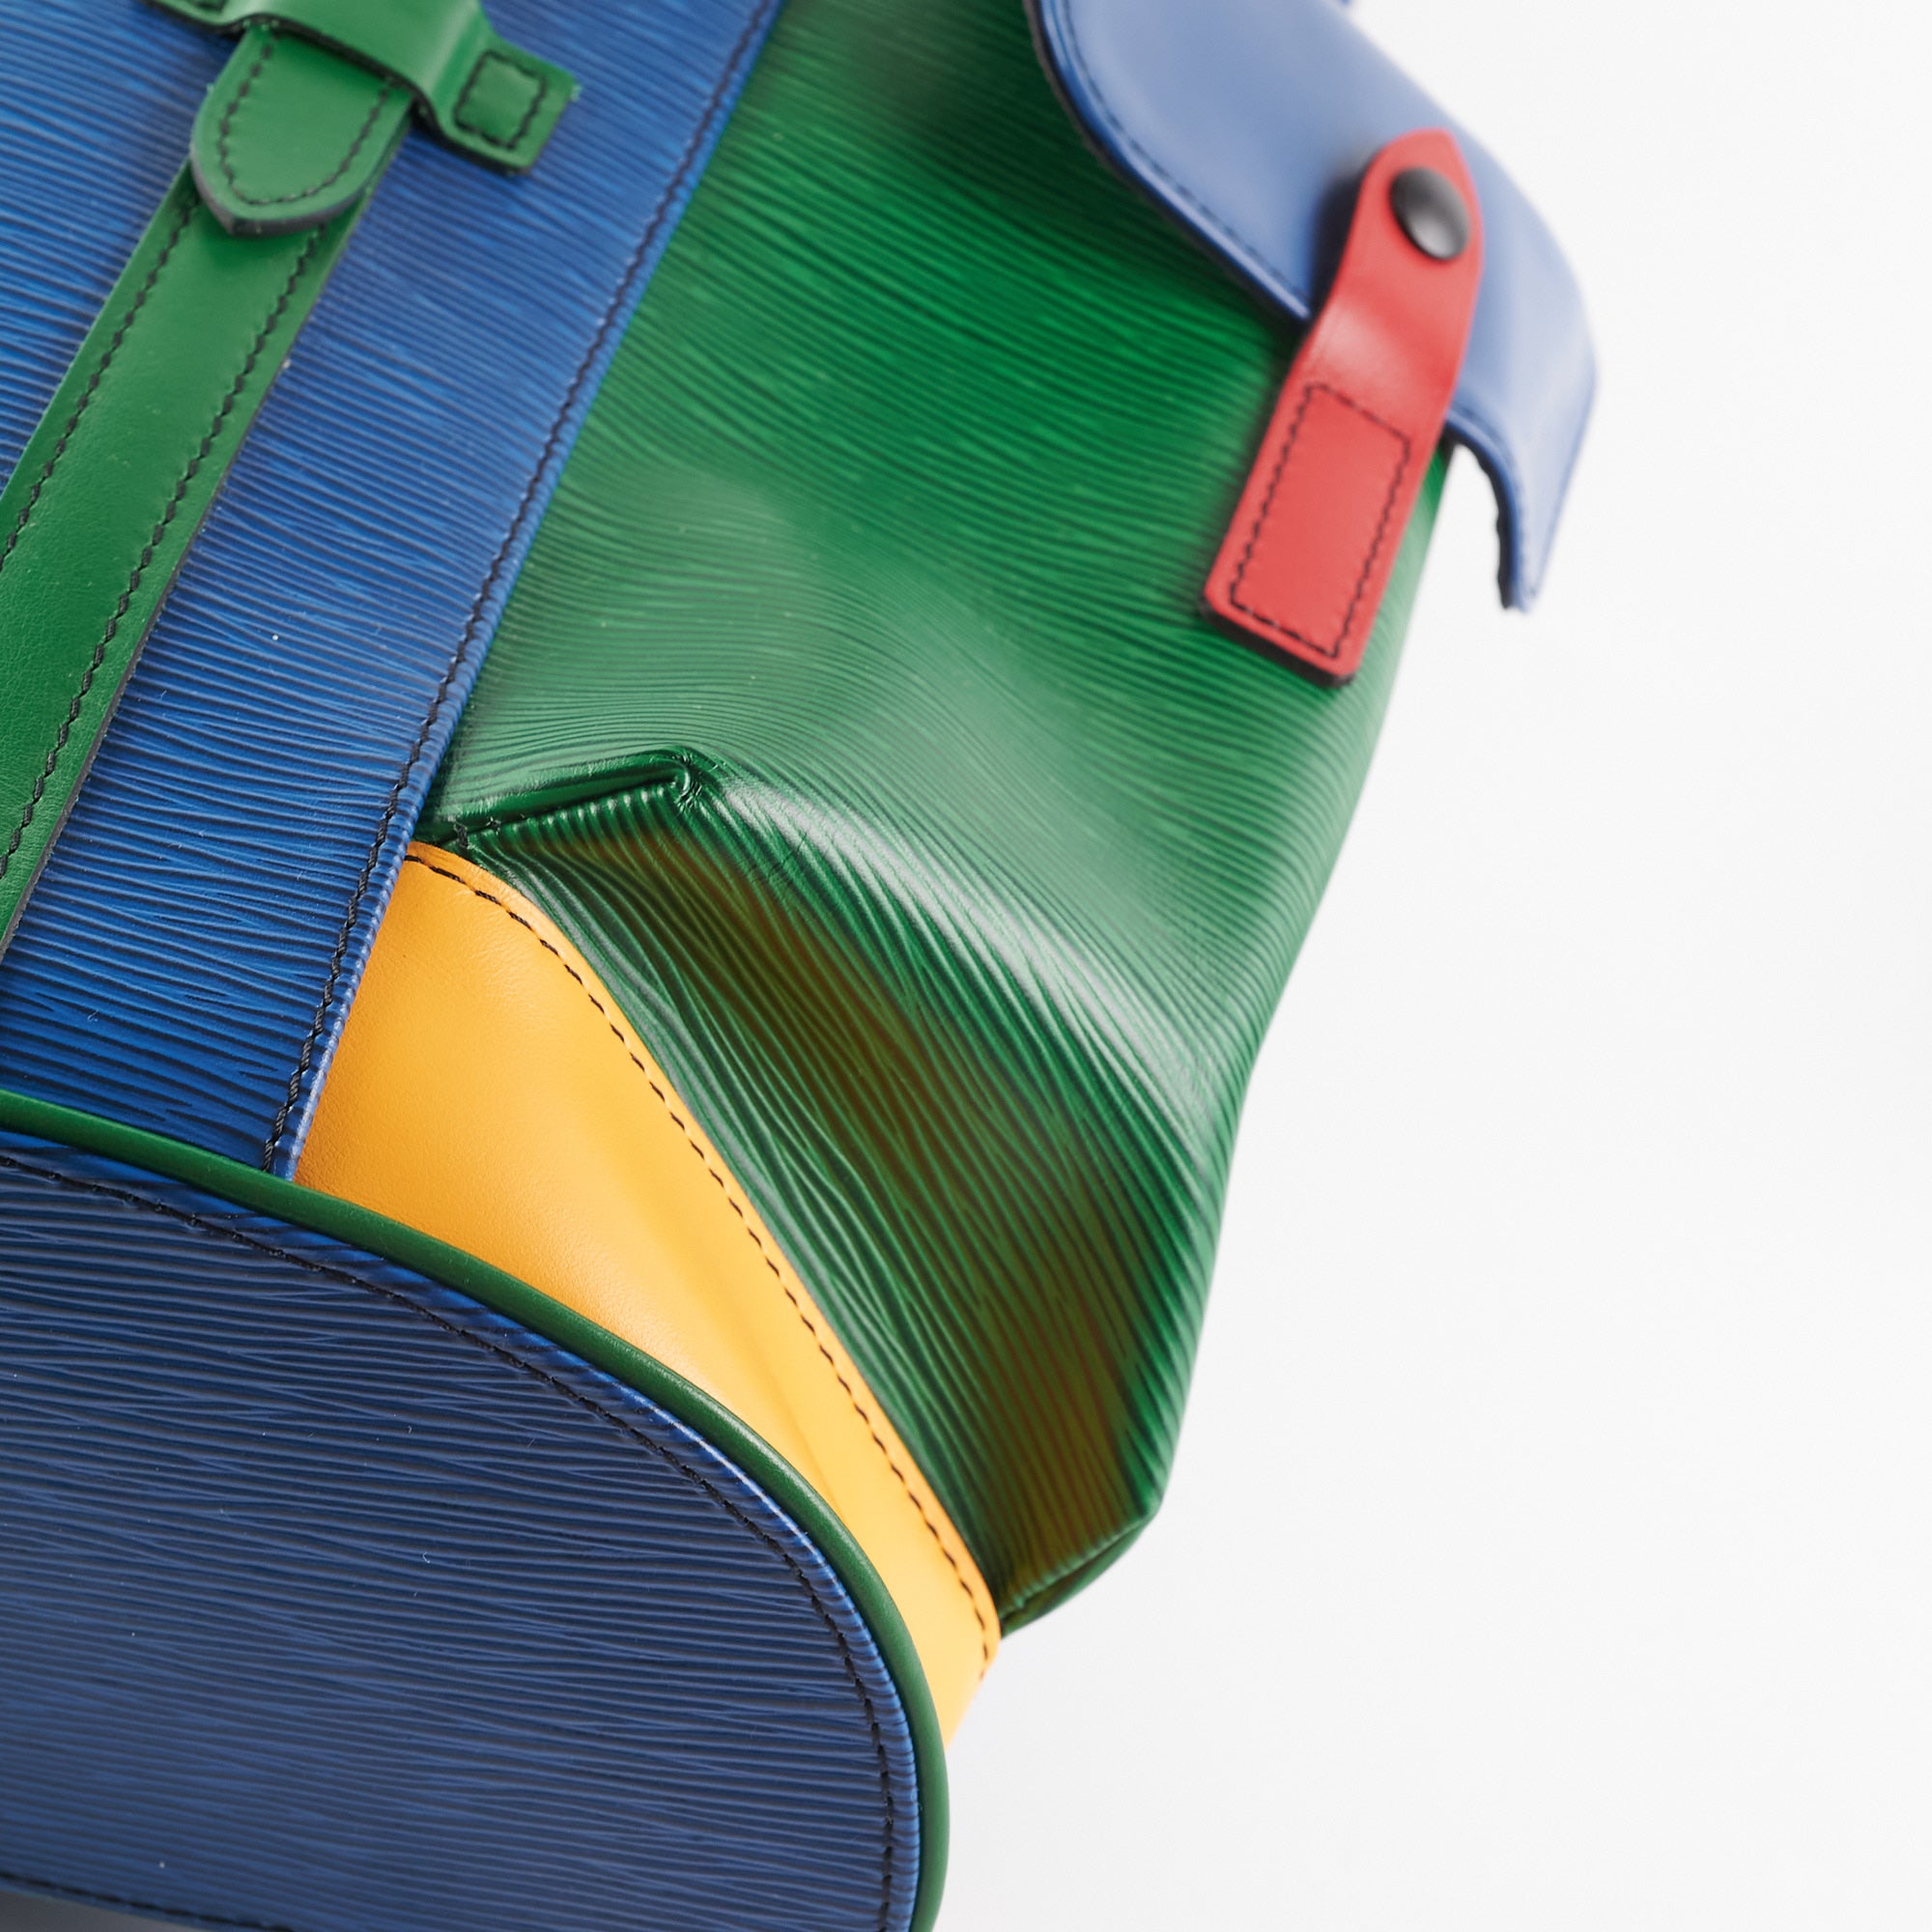 Louis Vuitton Tricolor Backpack - Vintage Lux